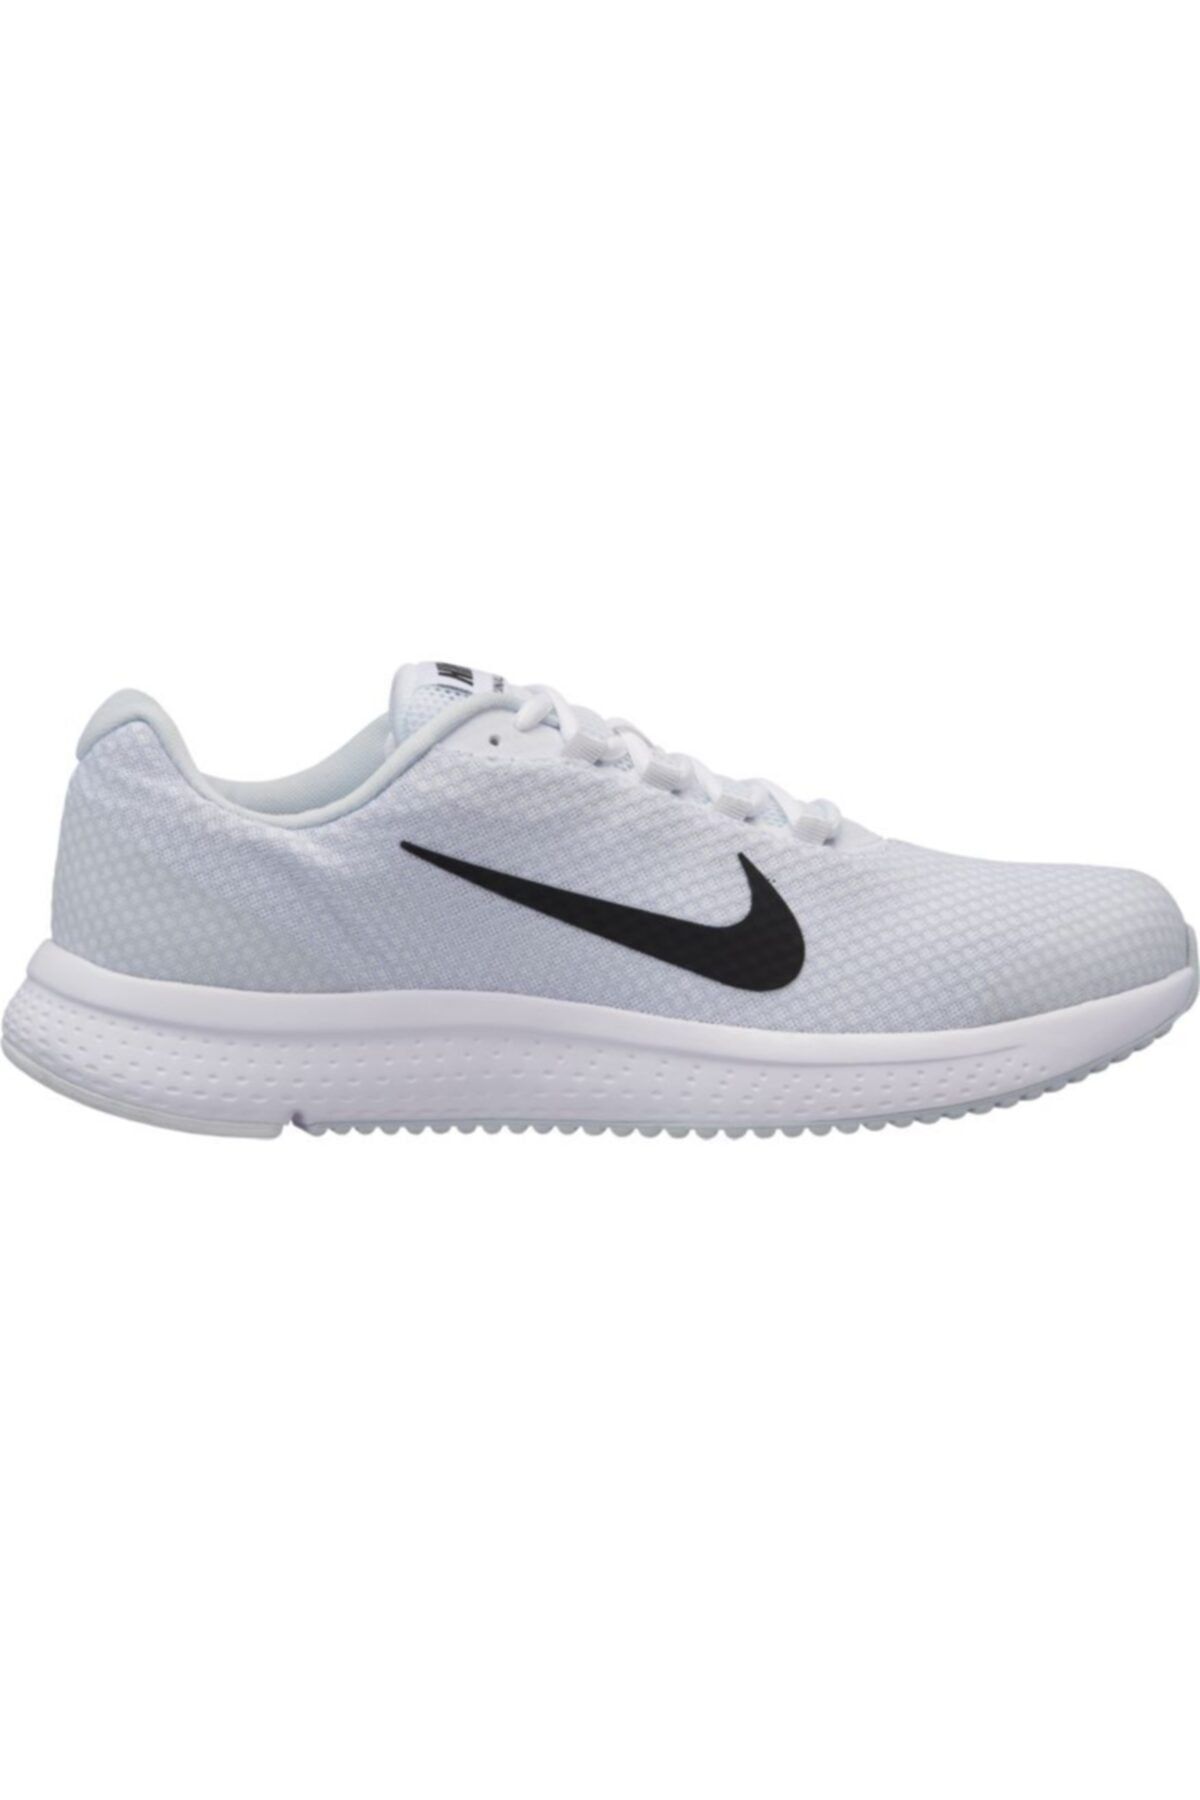 Nike Erkek Beyaz Runallday Spor Ayakkabı 898464-101